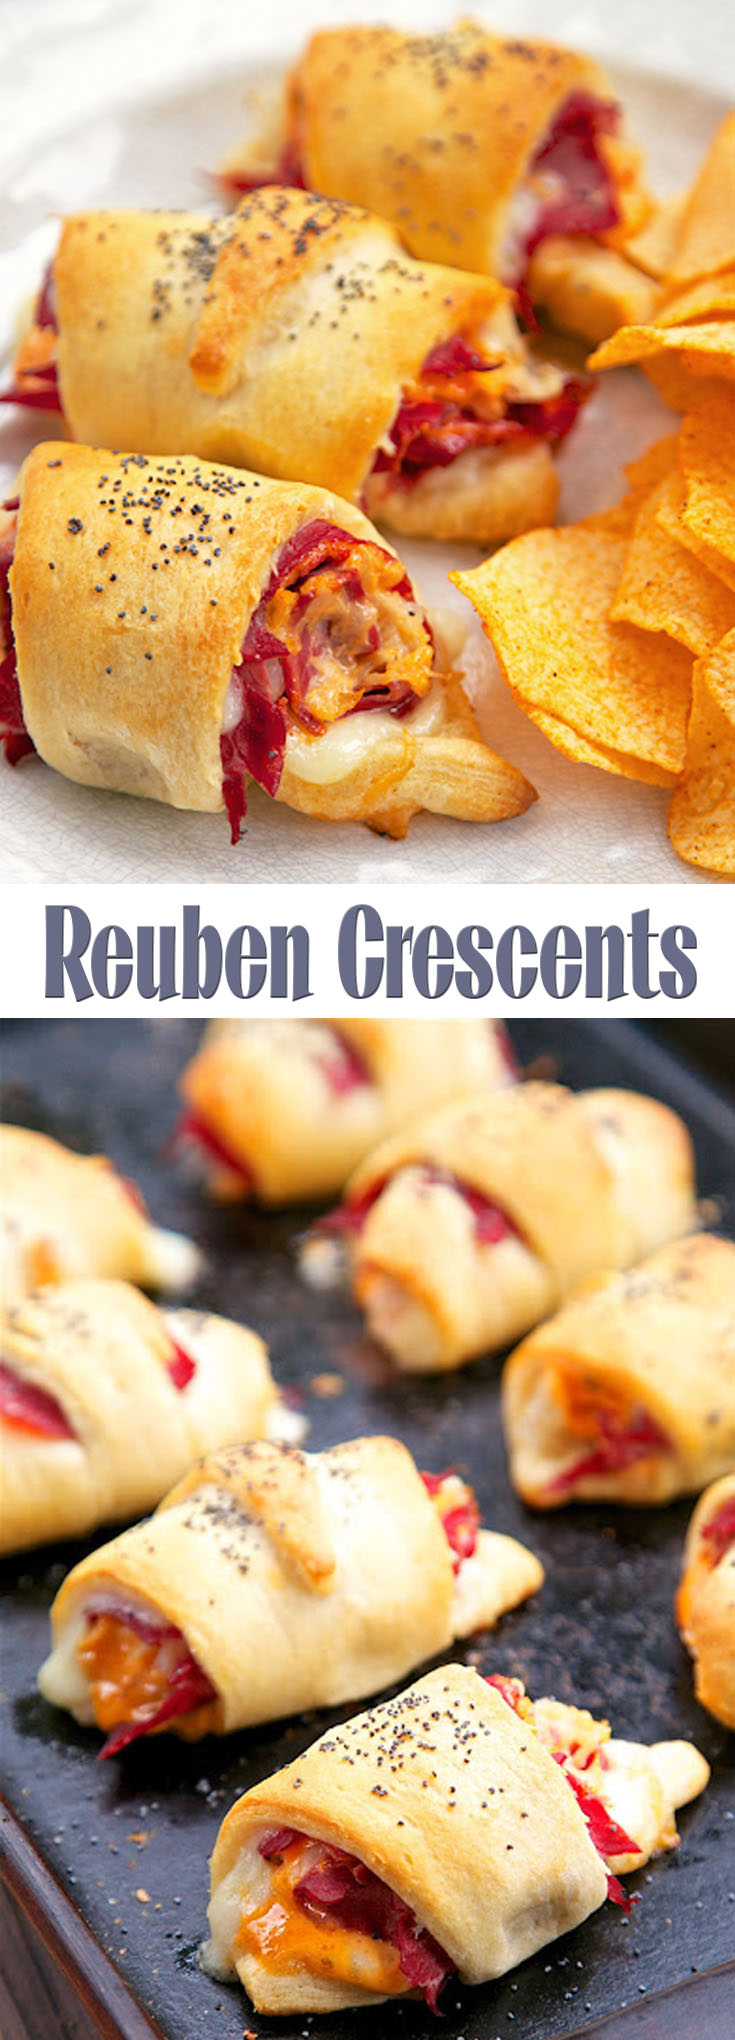 Reuben Crescents